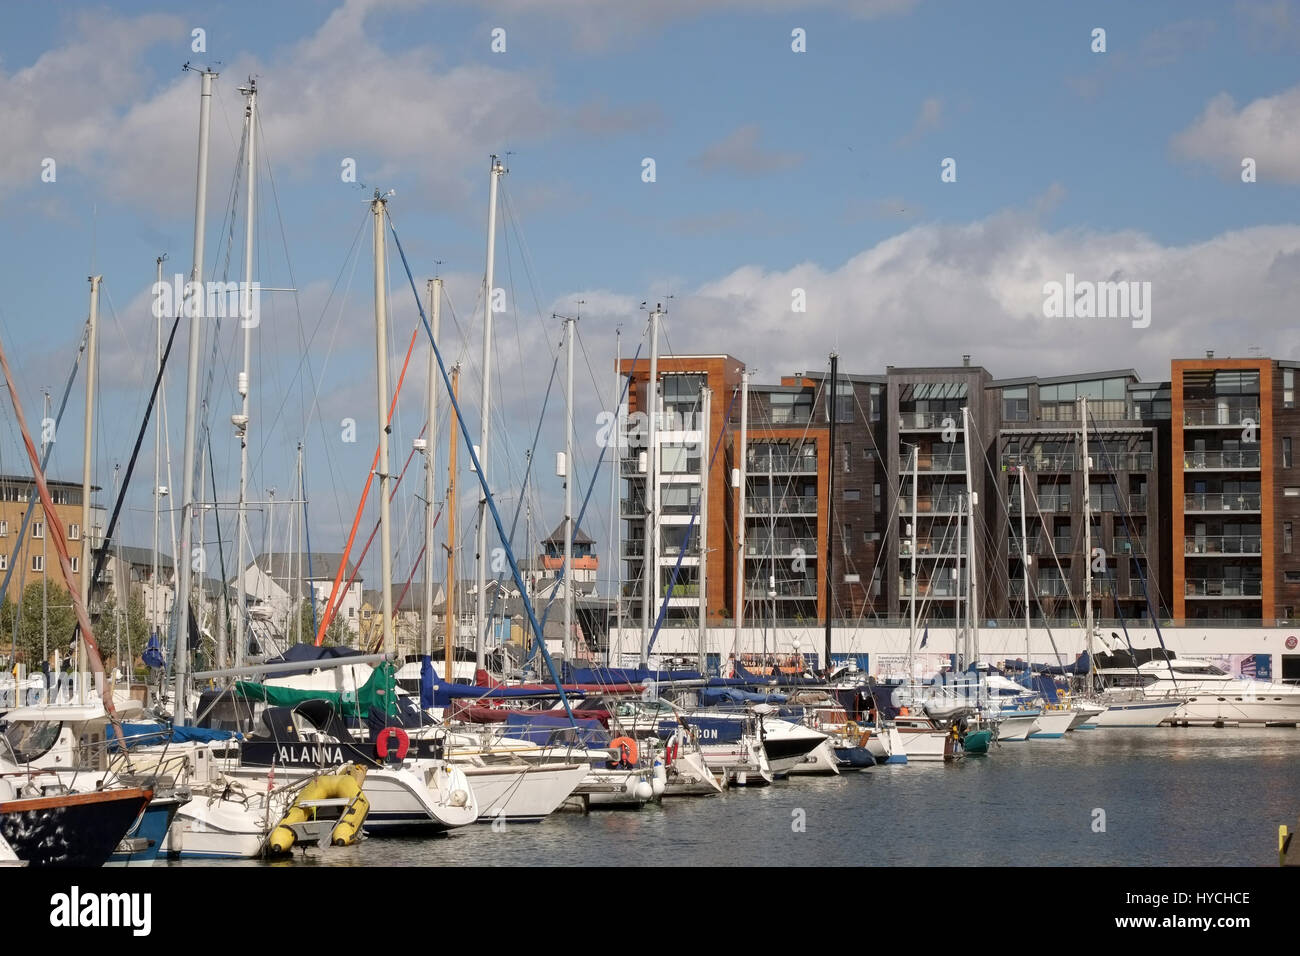 30 Marzo 2017 - Imbarcazioni e appartamenti sulla Marina a Portishead vicino a Bristol, nel sud ovest dell'Inghilterra. Foto Stock